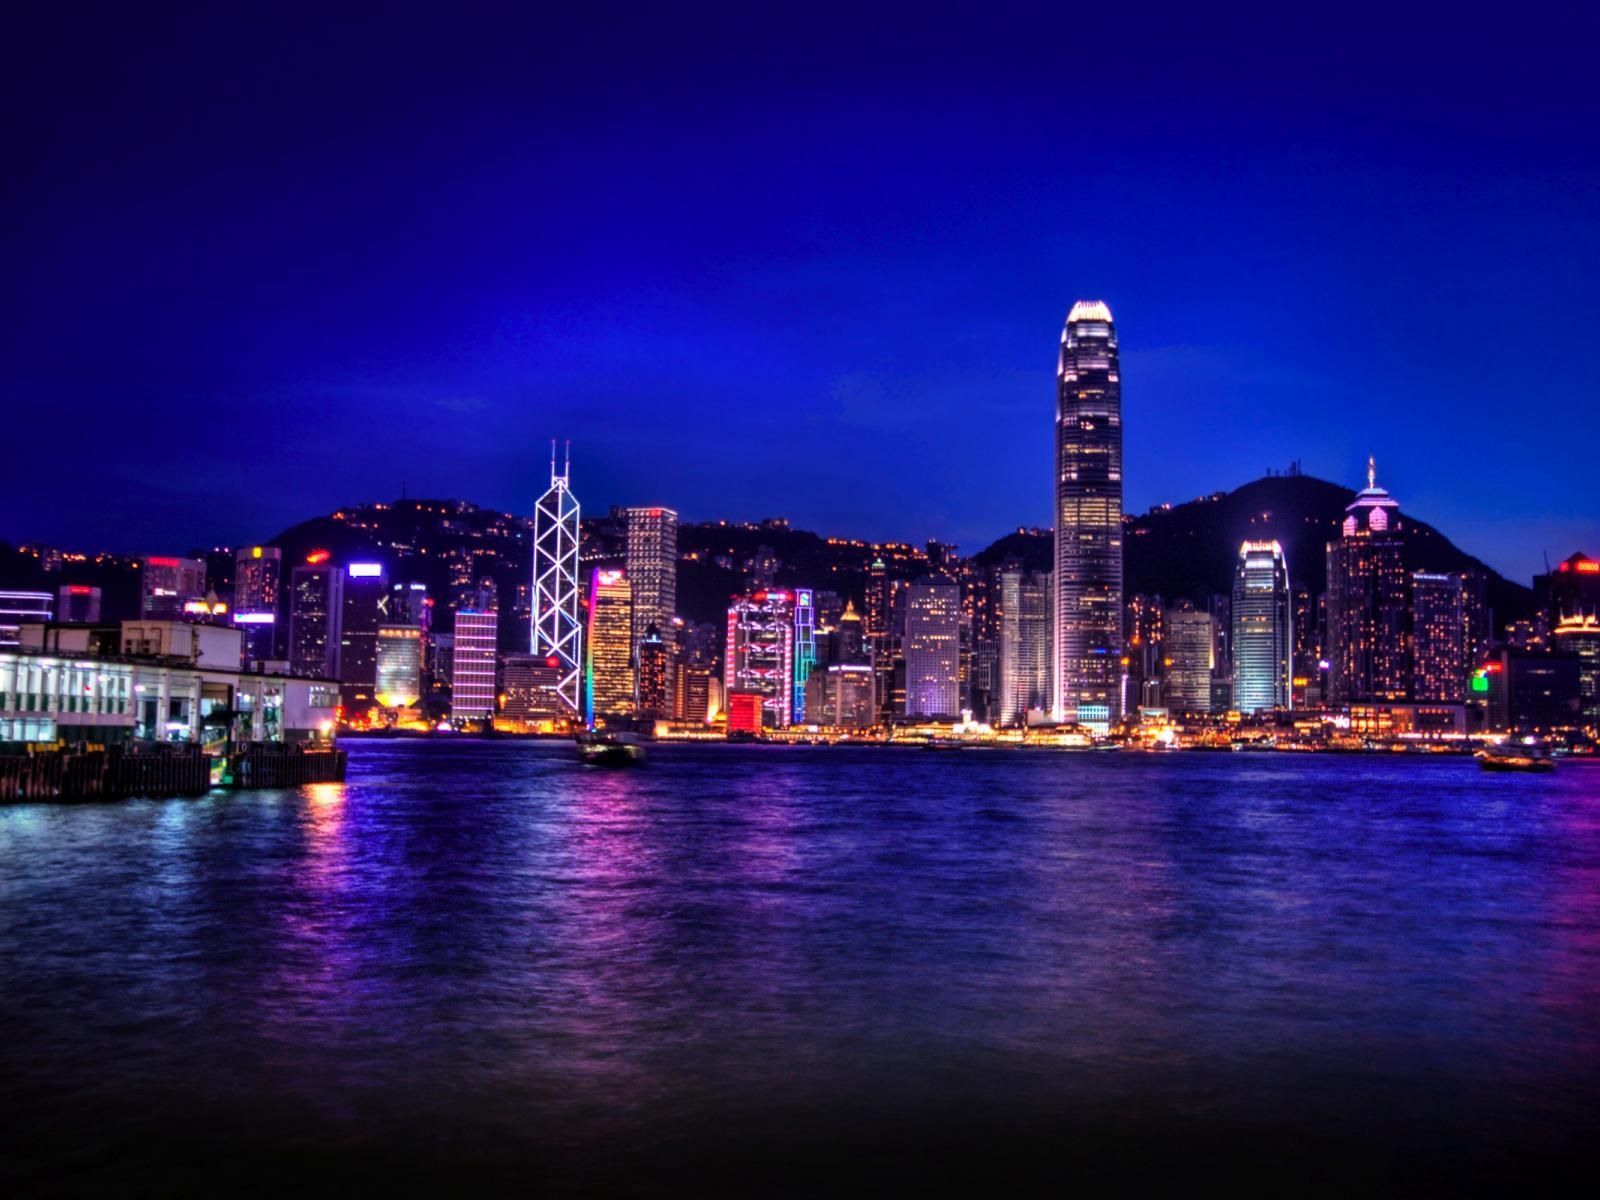 WallpaperDog mang đến cho bạn những hình nền Hong Kong ngoạn mục nhất! Trong đó có những tòa nhà cao chọc trời, những con đường náo nhiệt và những địa điểm du lịch hấp dẫn. Cùng tải về để trang trí cho màn hình của bạn thật ấn tượng nhé!